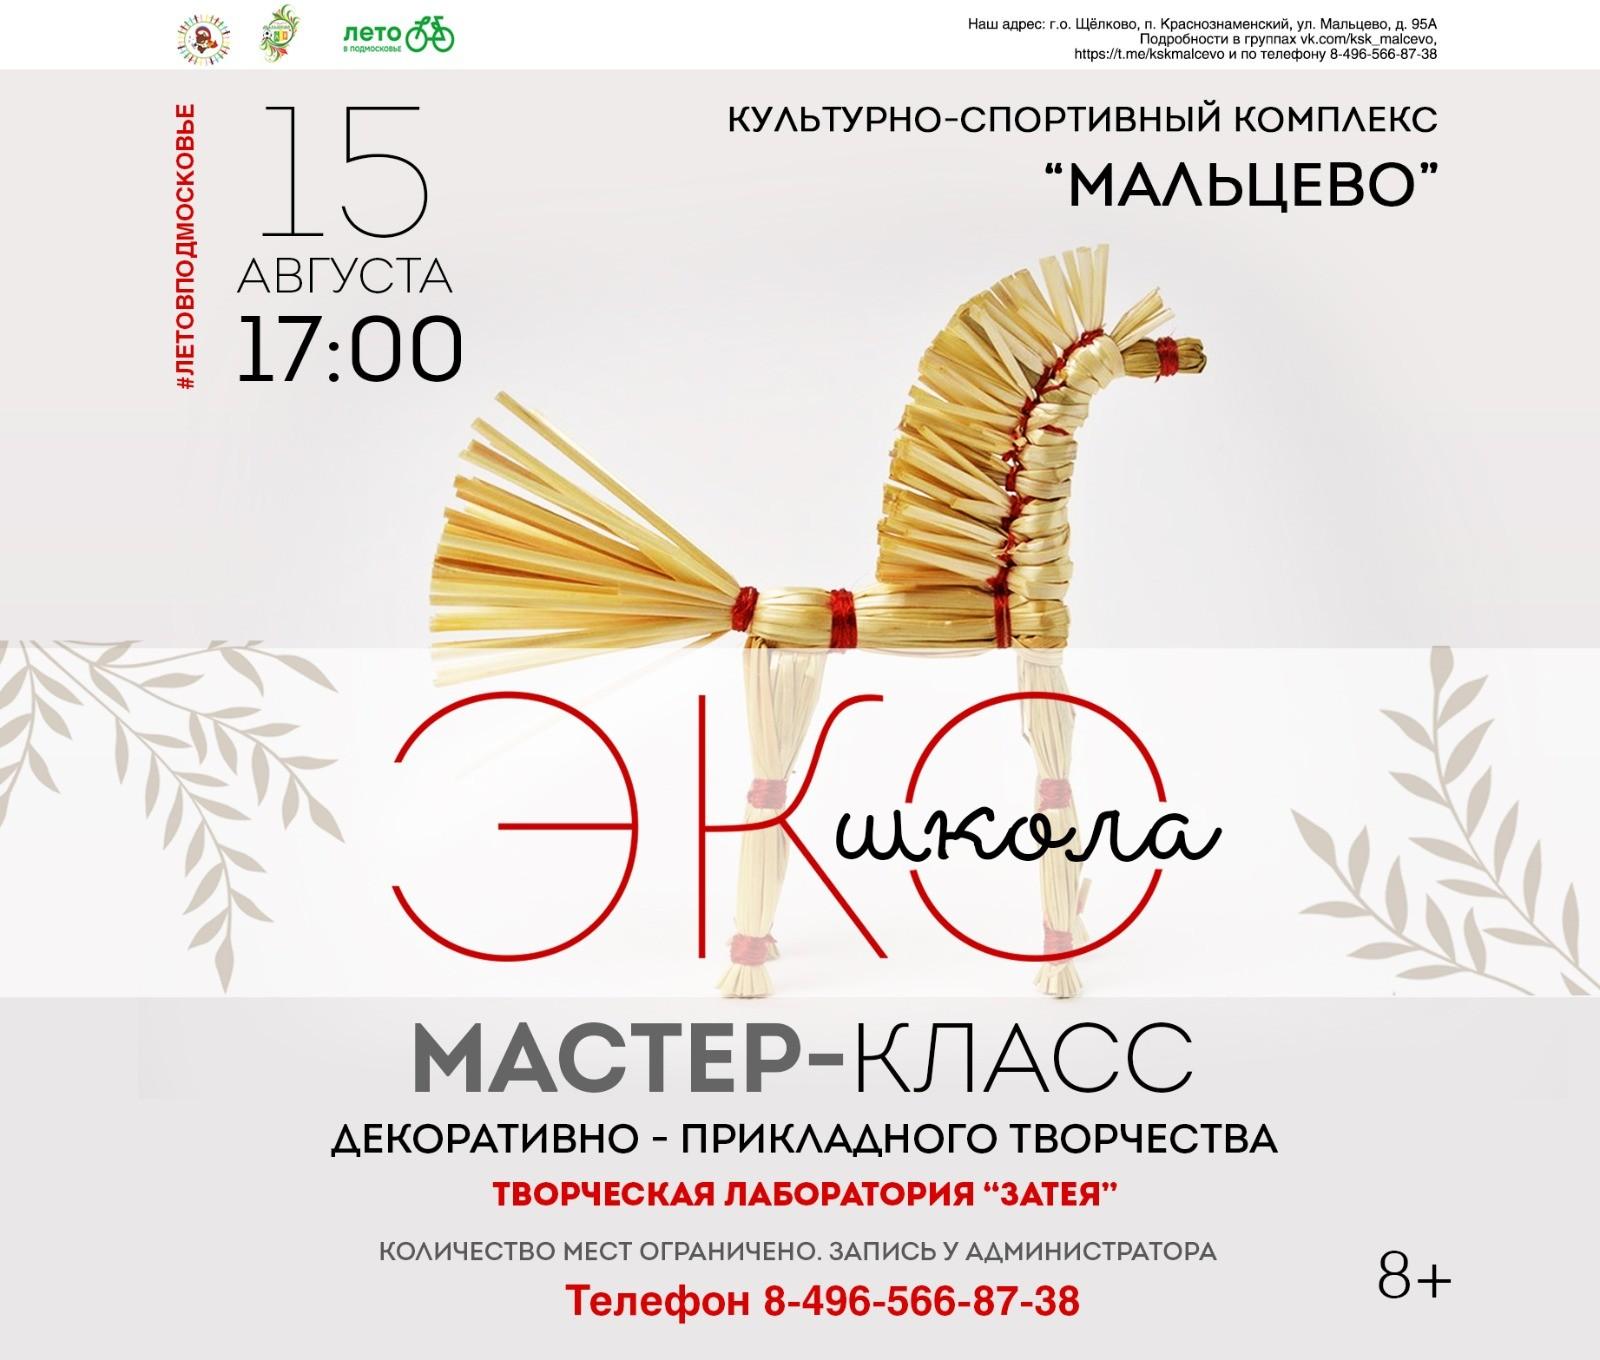 Курсы и мастер-классы по гончарному мастерству в Щелково - 4 адреса - рейтинг, контакты, отзывы